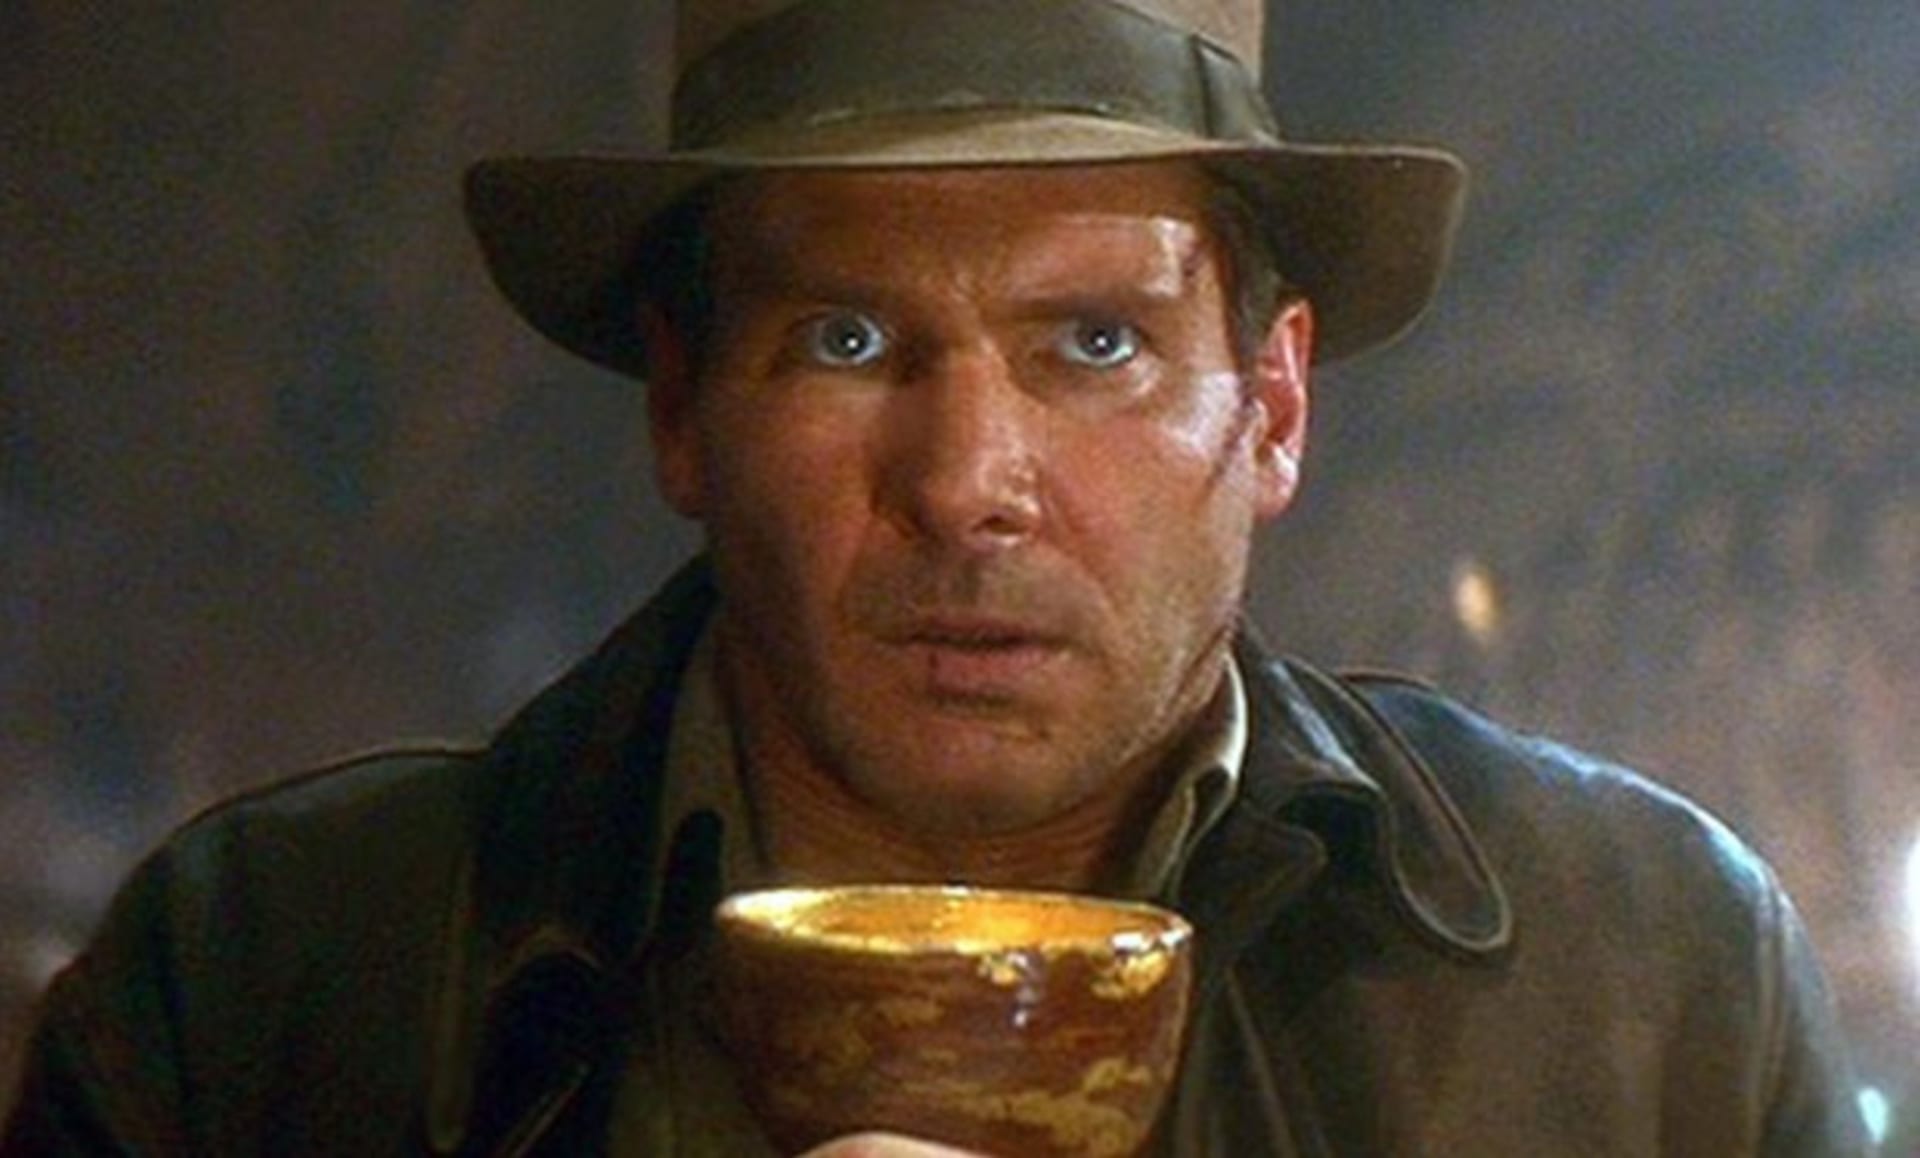 Indiana Jones a Poslední křížová výprava